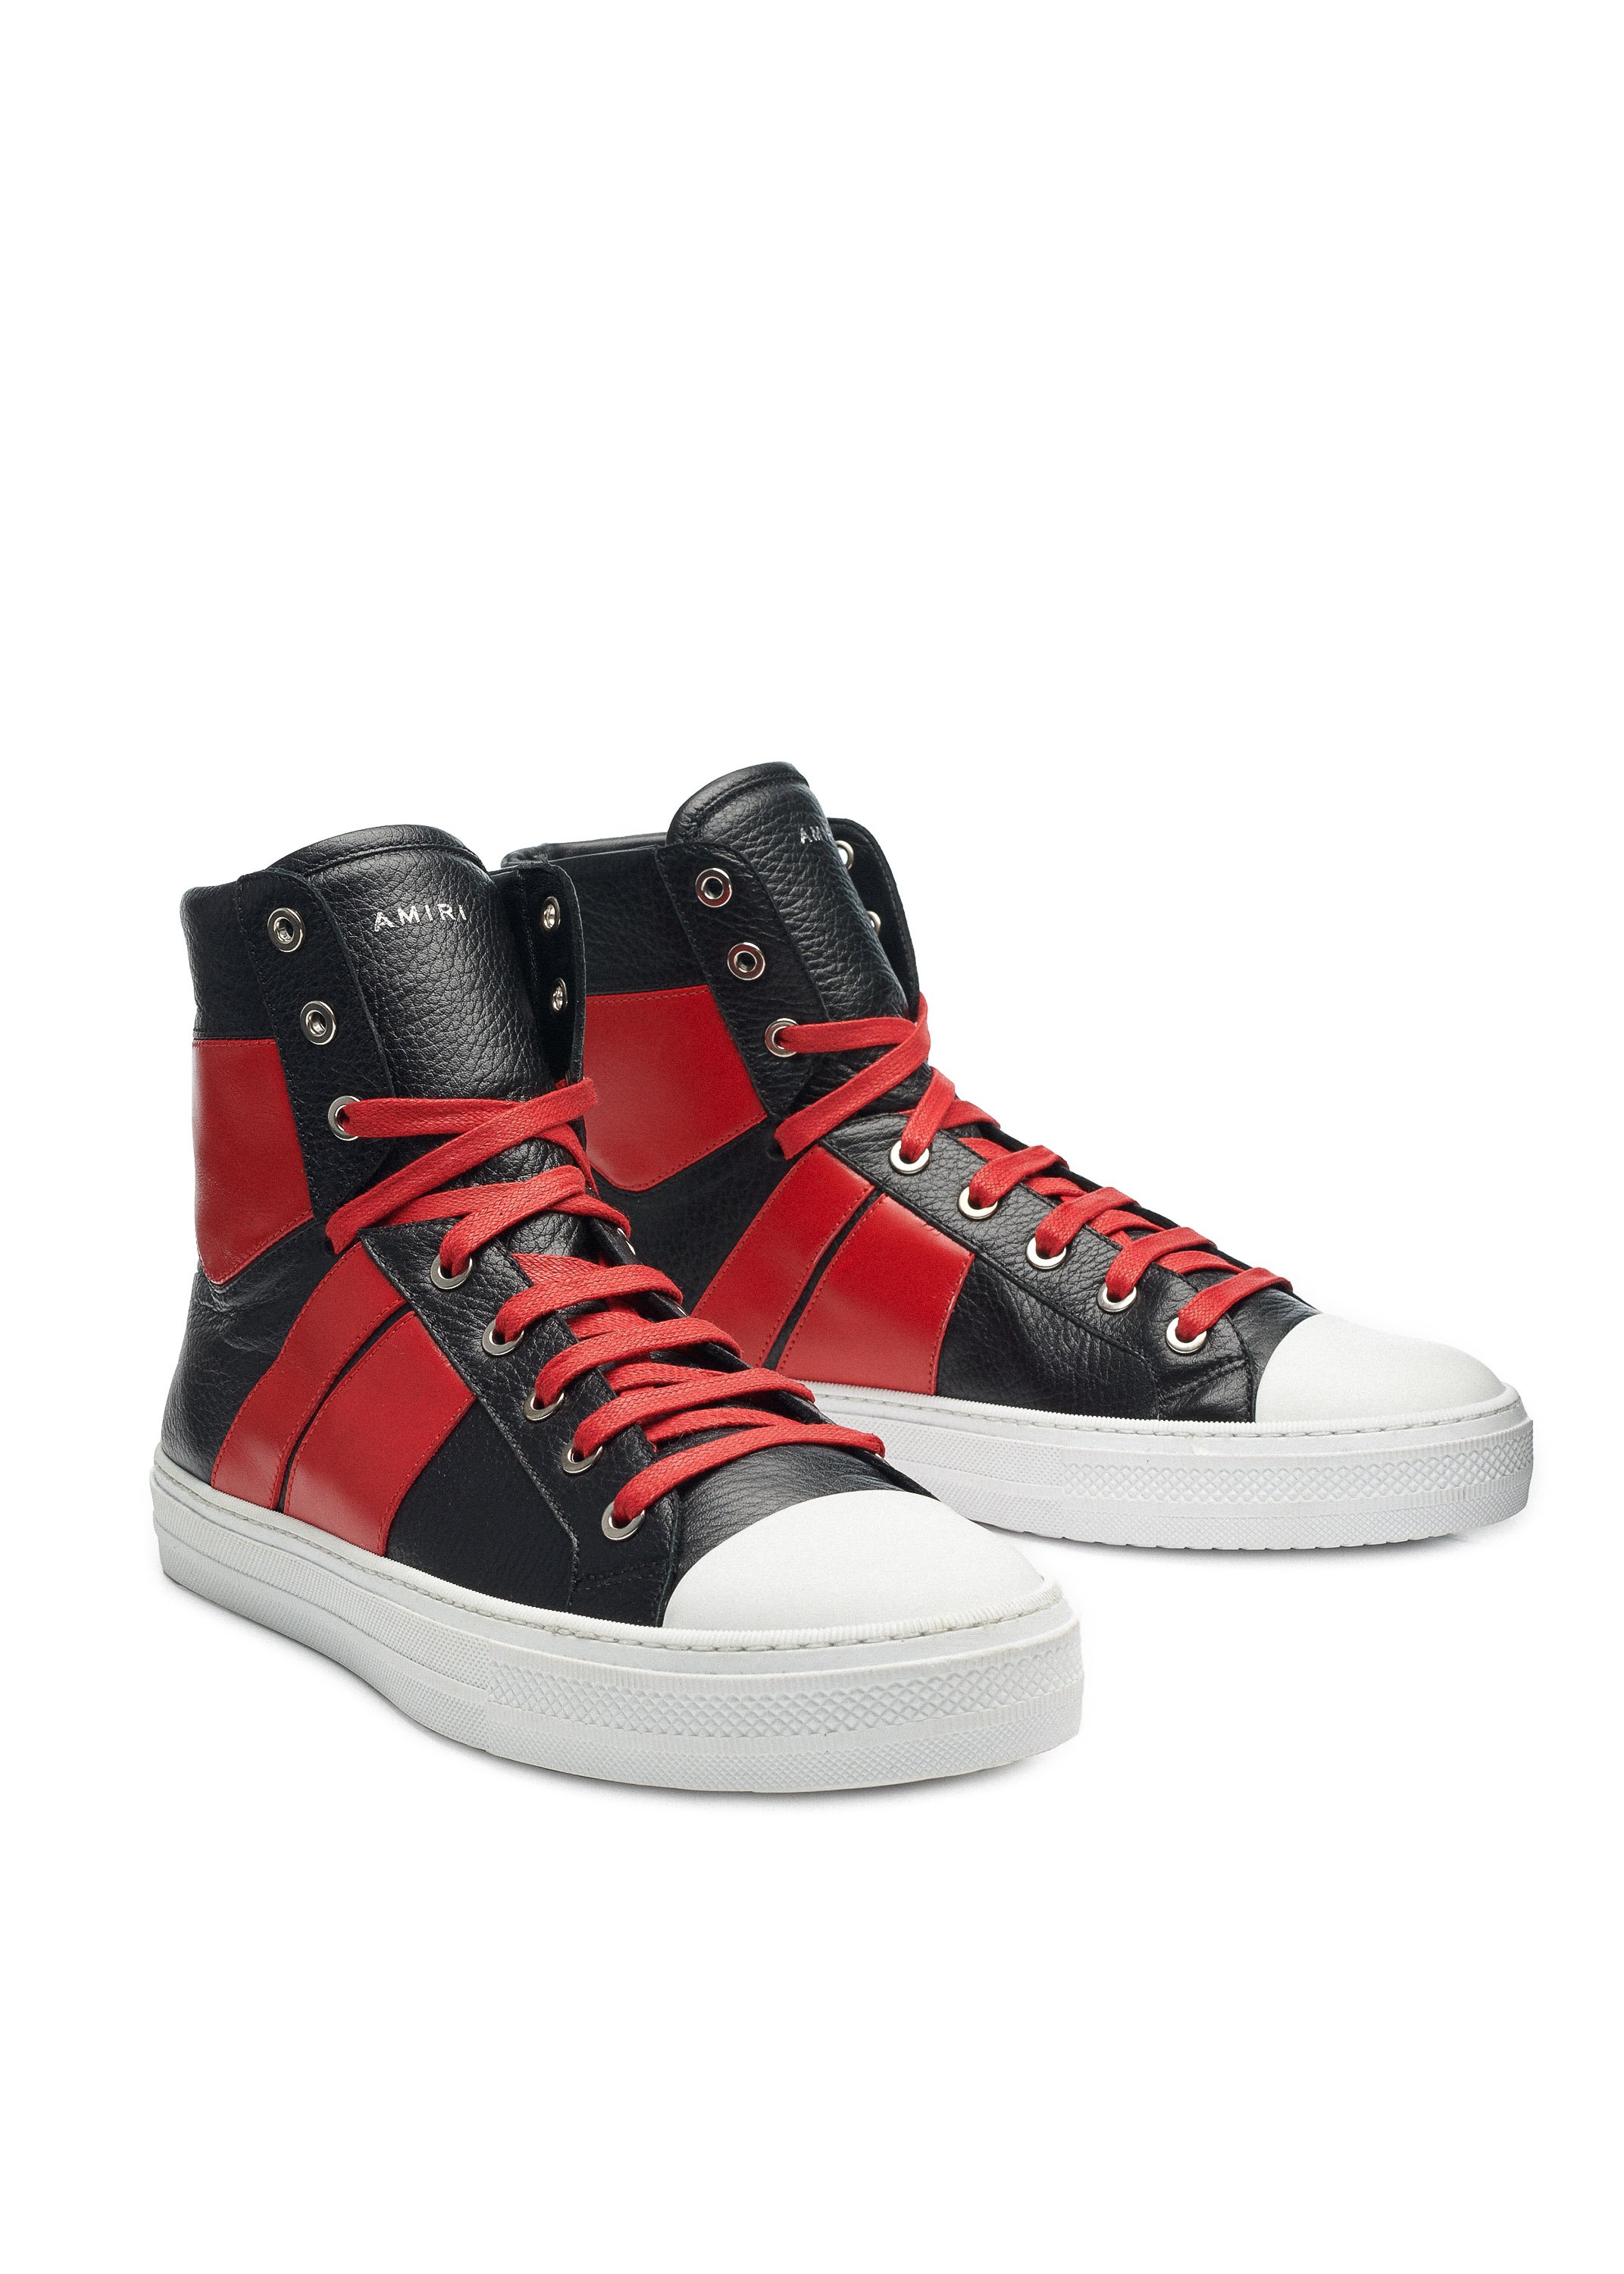 AMIRI Sunset Sneaker // Available Now | Nice Kicks